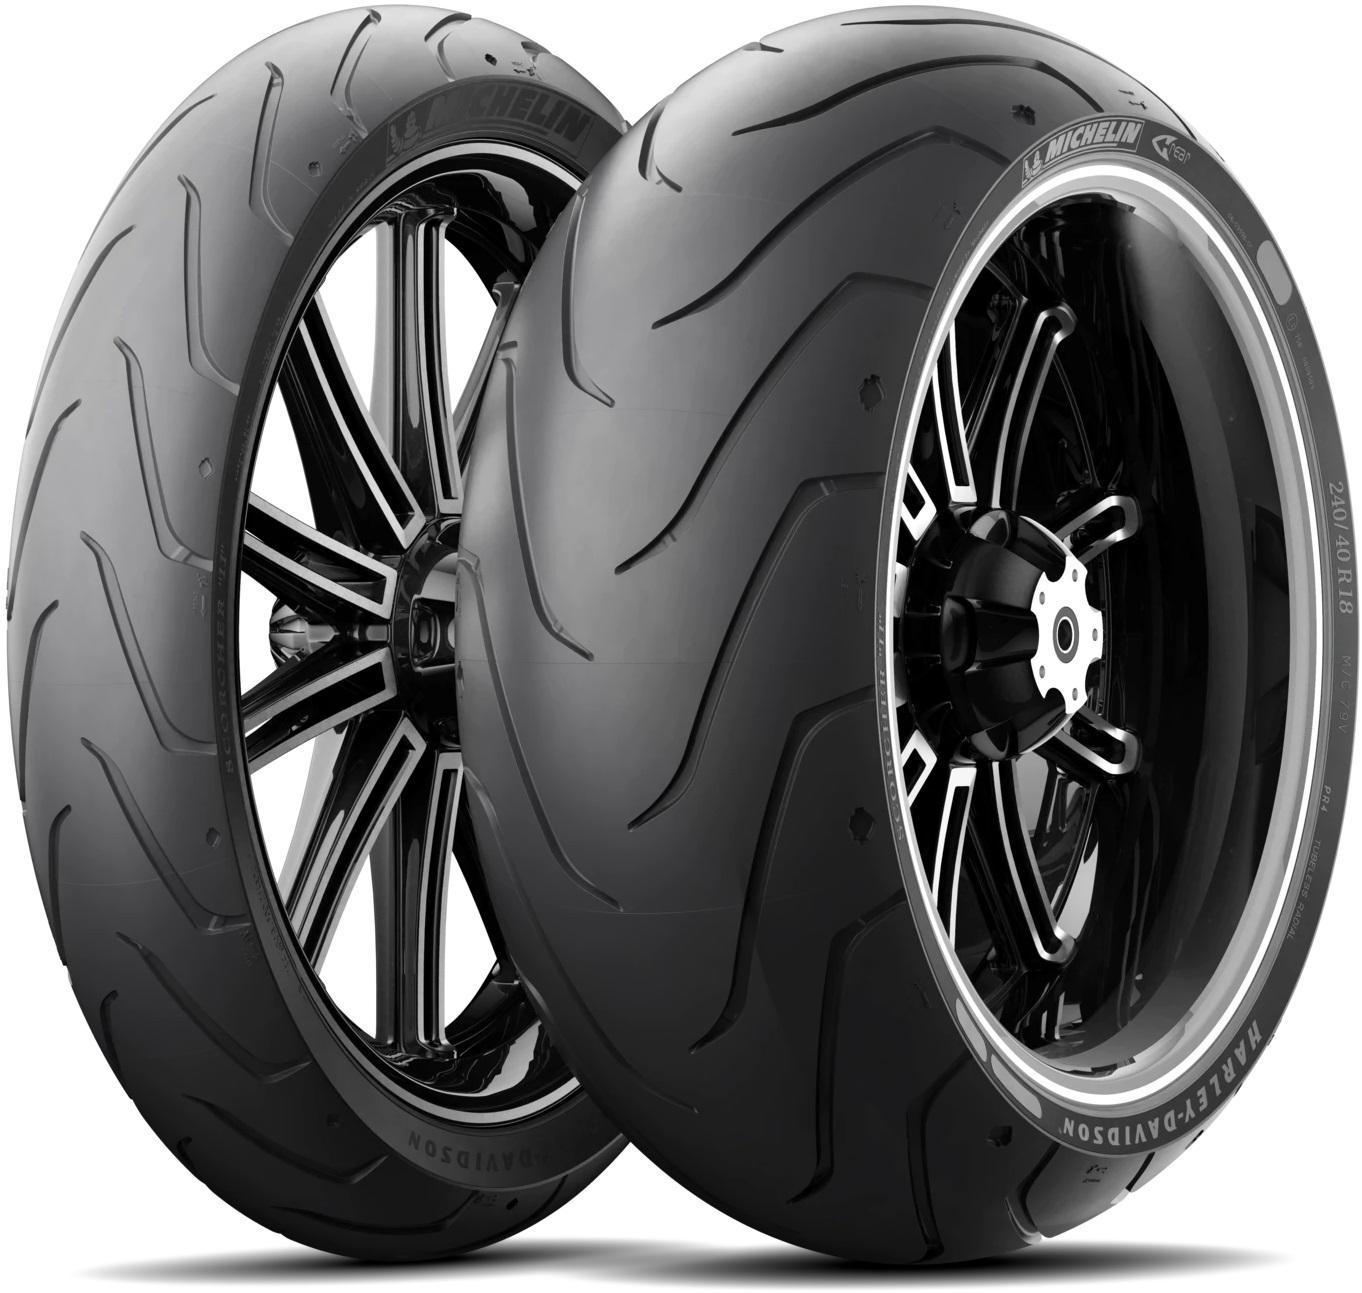 Michelin Scorcher 11 Tyres